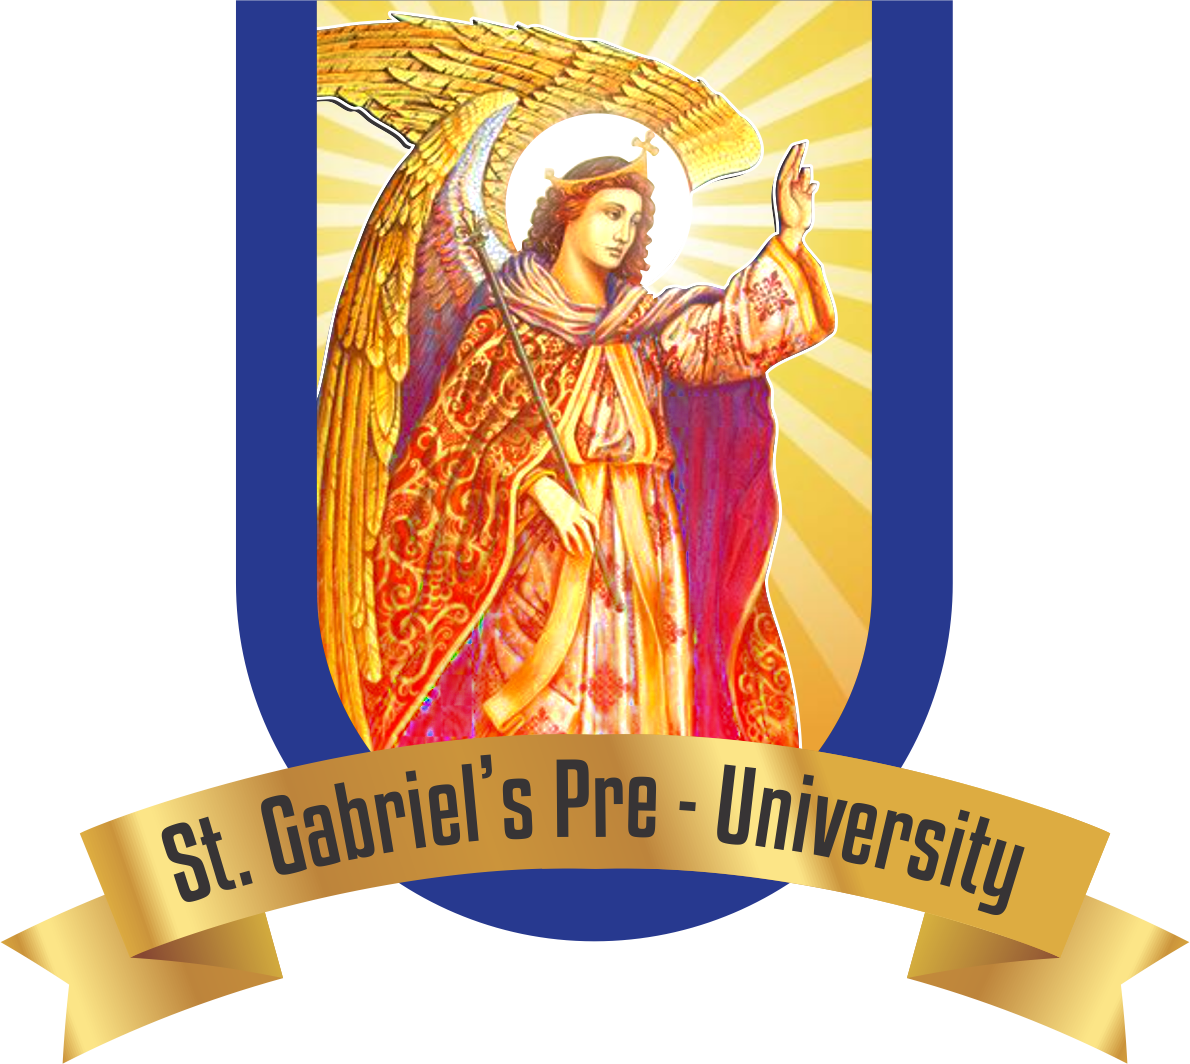 St. Gabriel's Pre - University